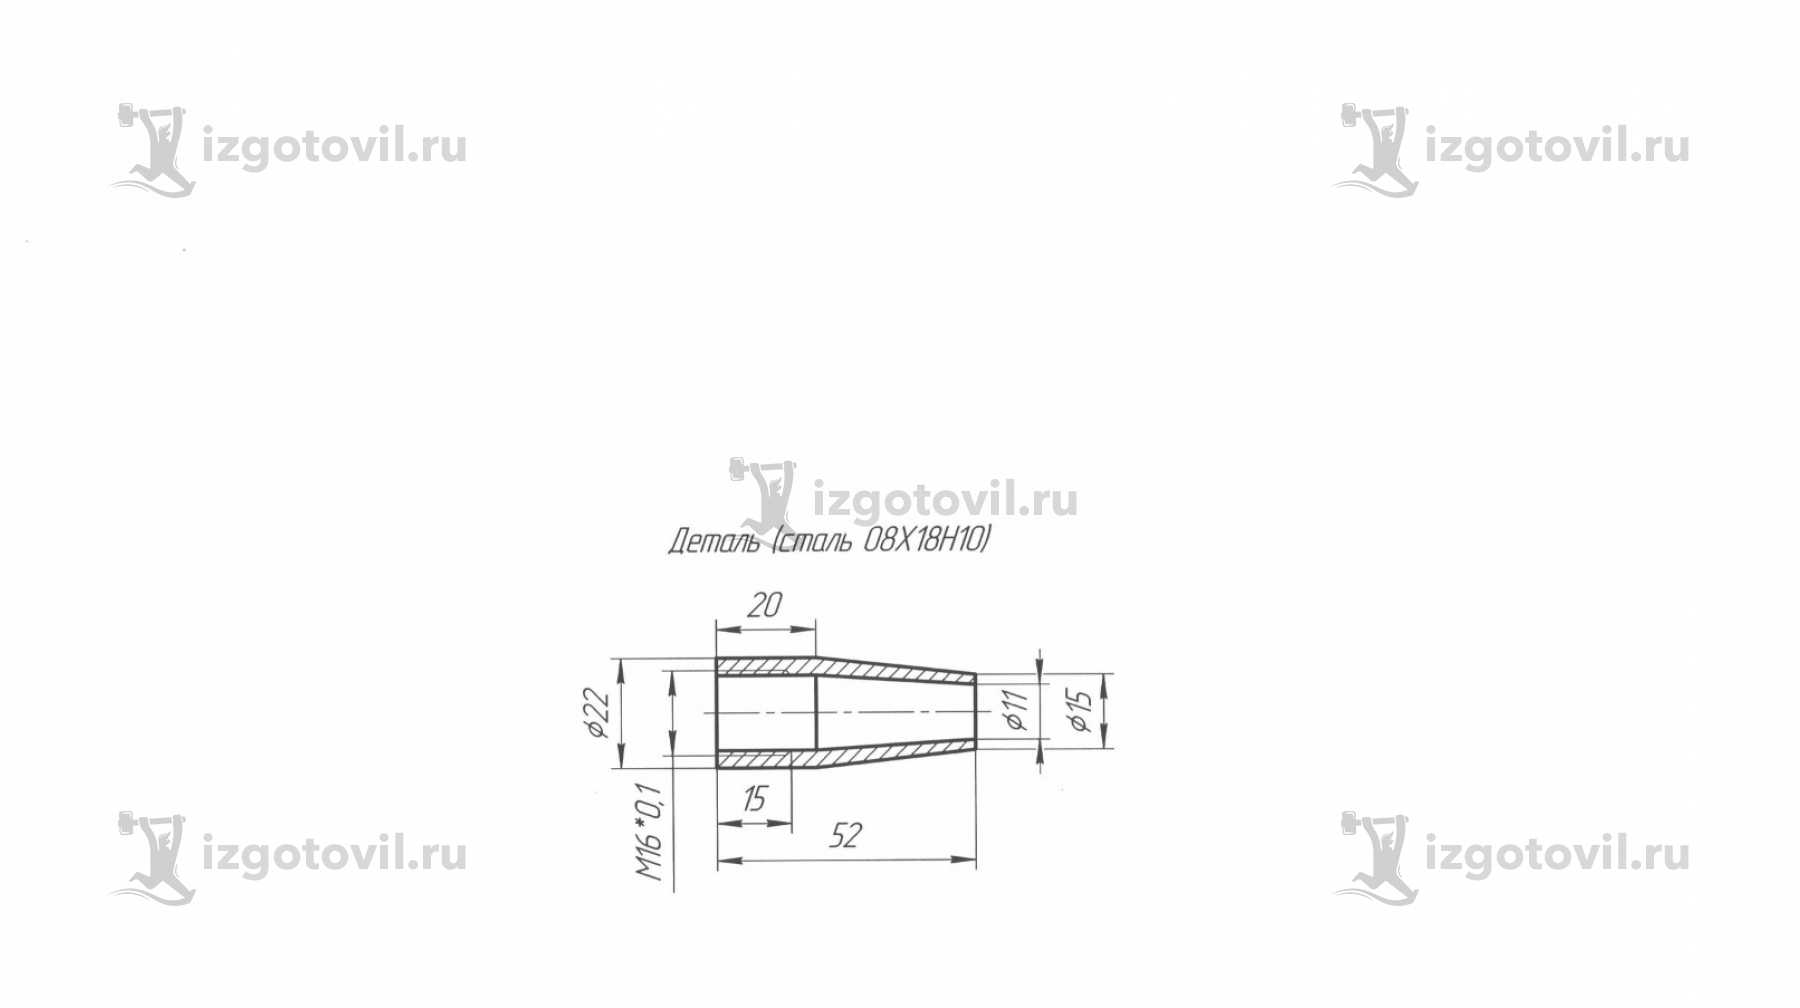 Токарная обработка деталей: опускная труба, полусфера, продувной клапан, шахта и штуцер